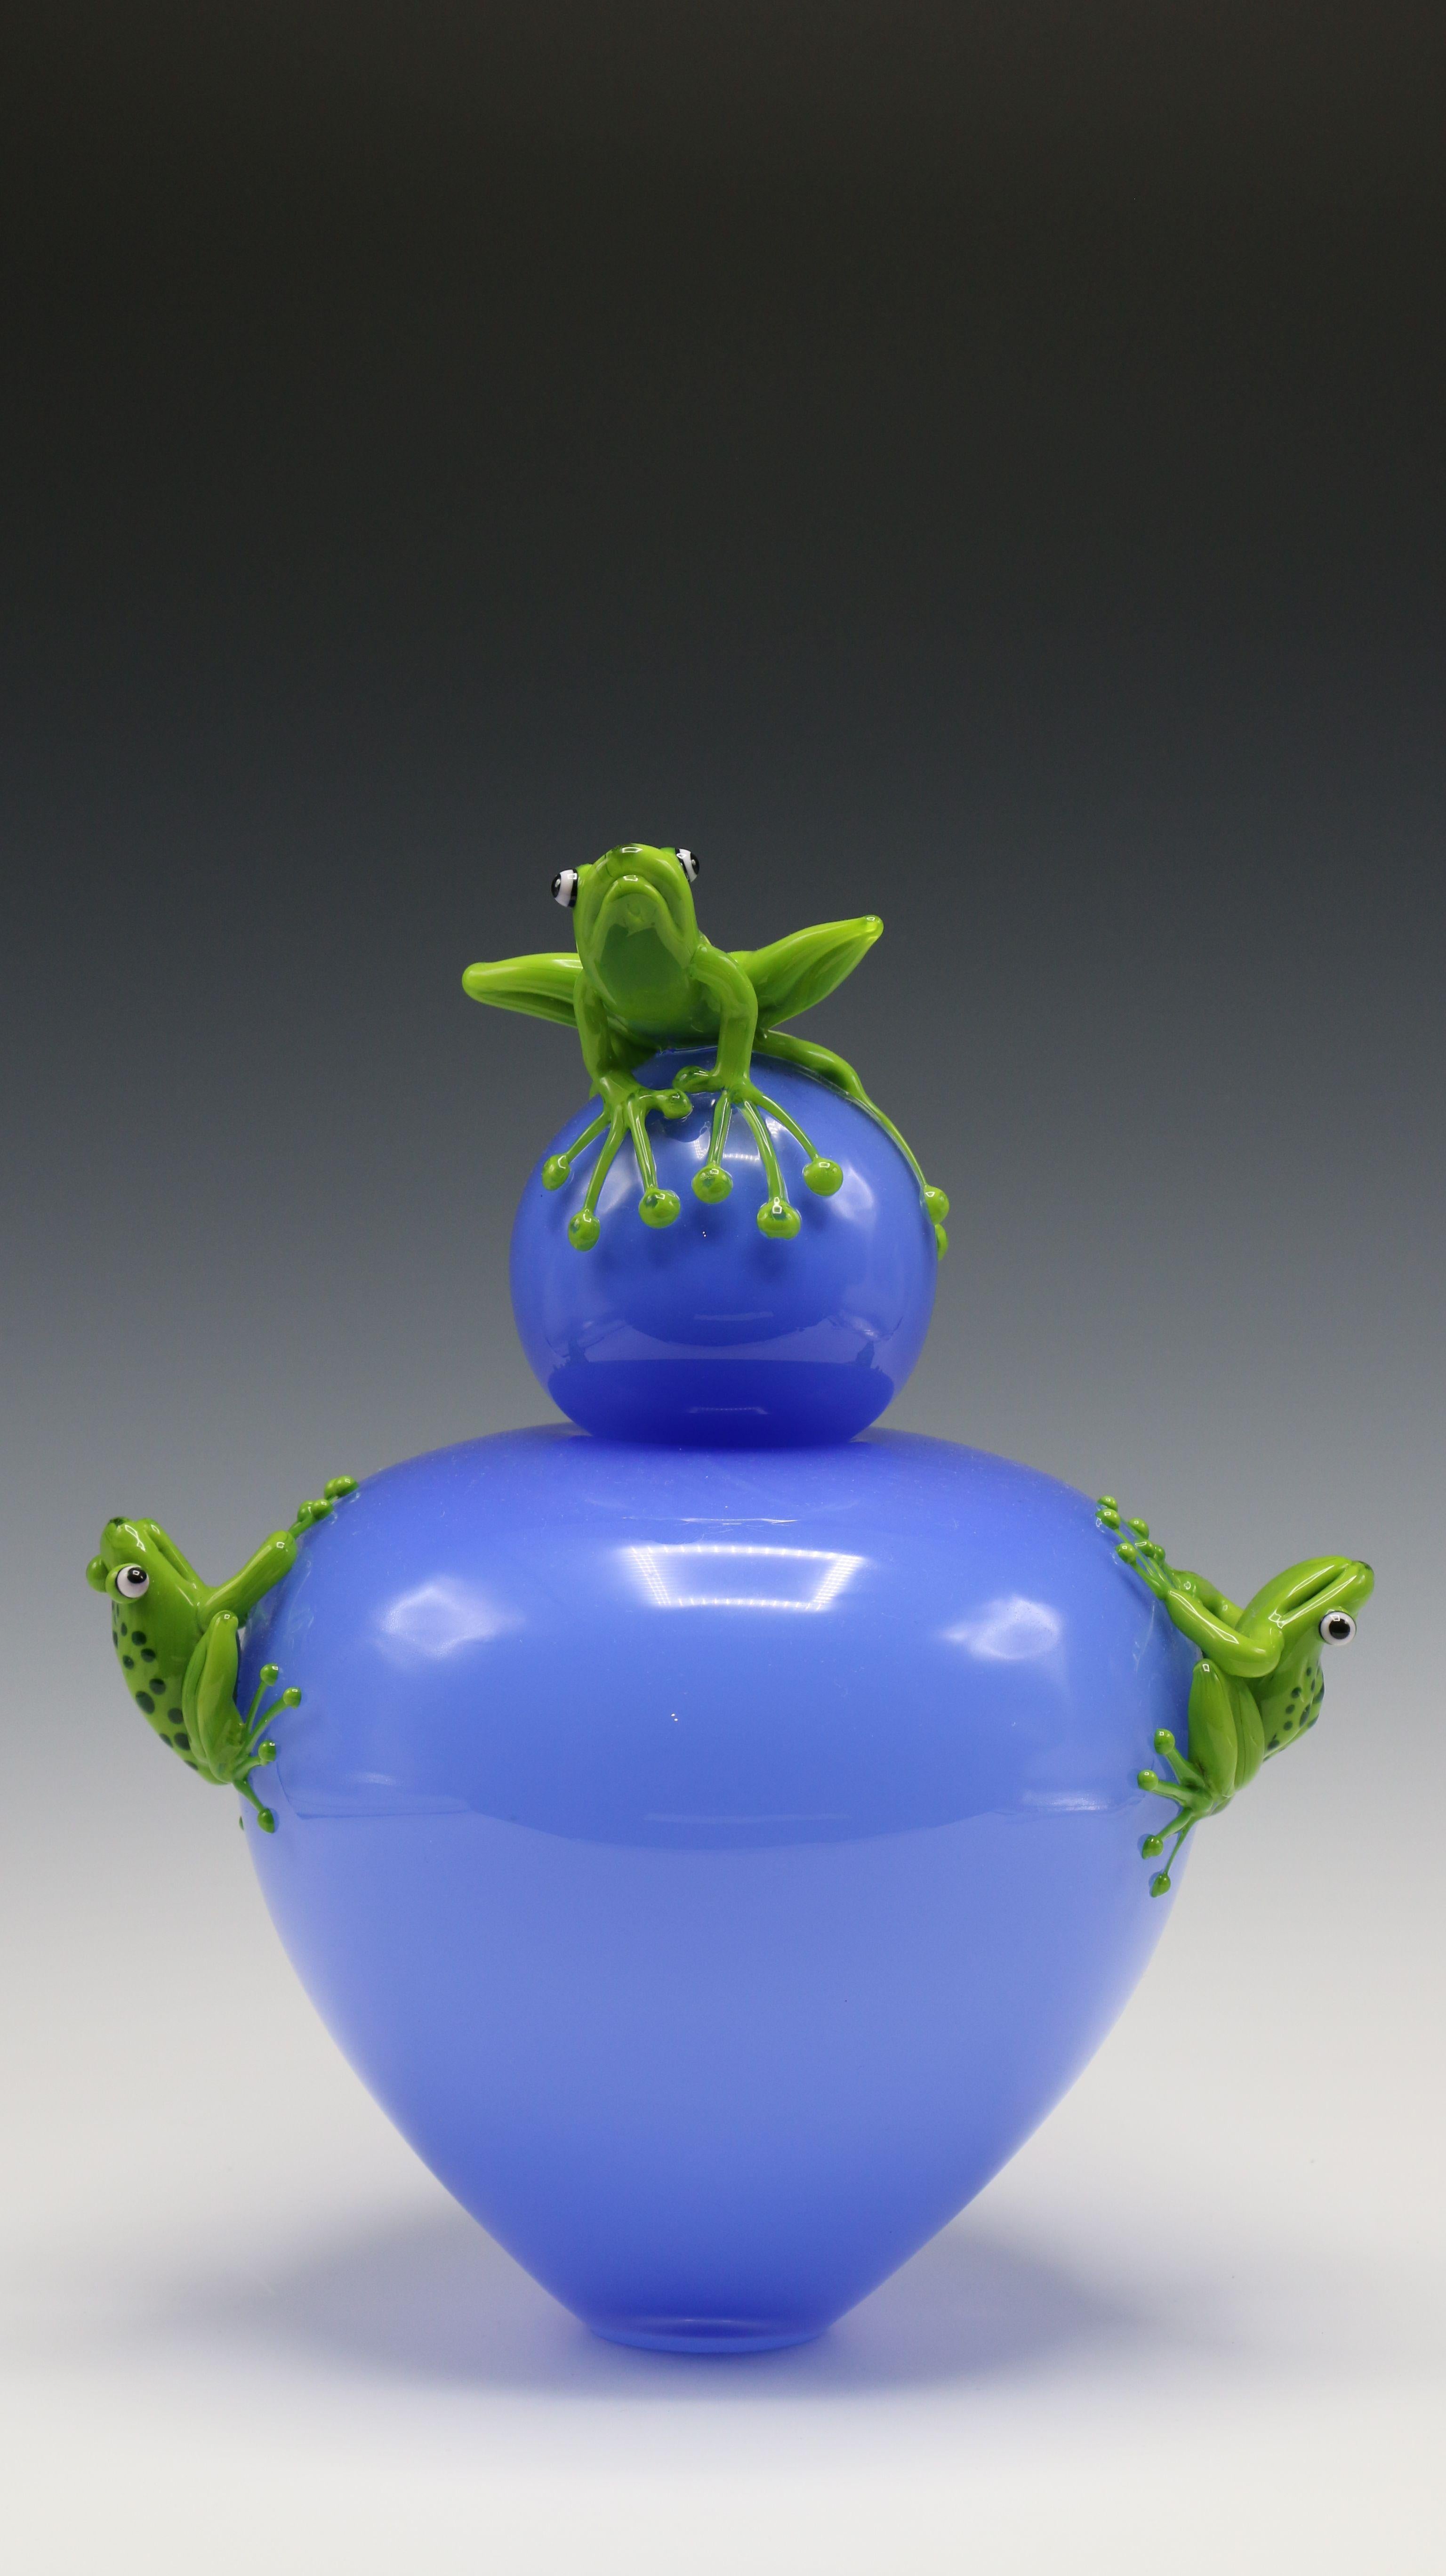 Frog Vase - Sculpture by Joe Peters and Peter Muller